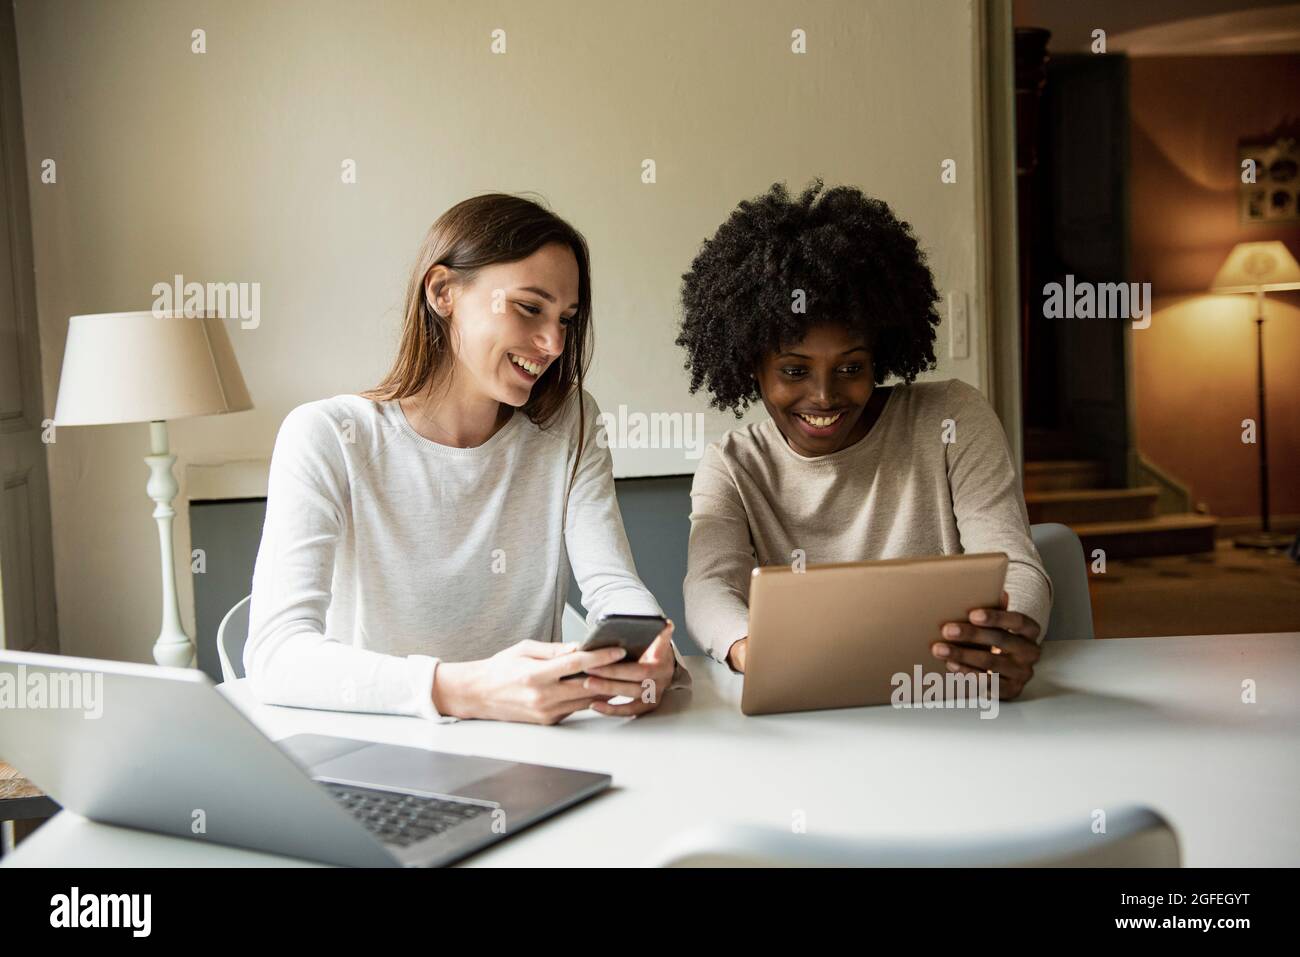 Jeunes femmes souriantes utilisant une tablette numérique et un smartphone à la maison Banque D'Images